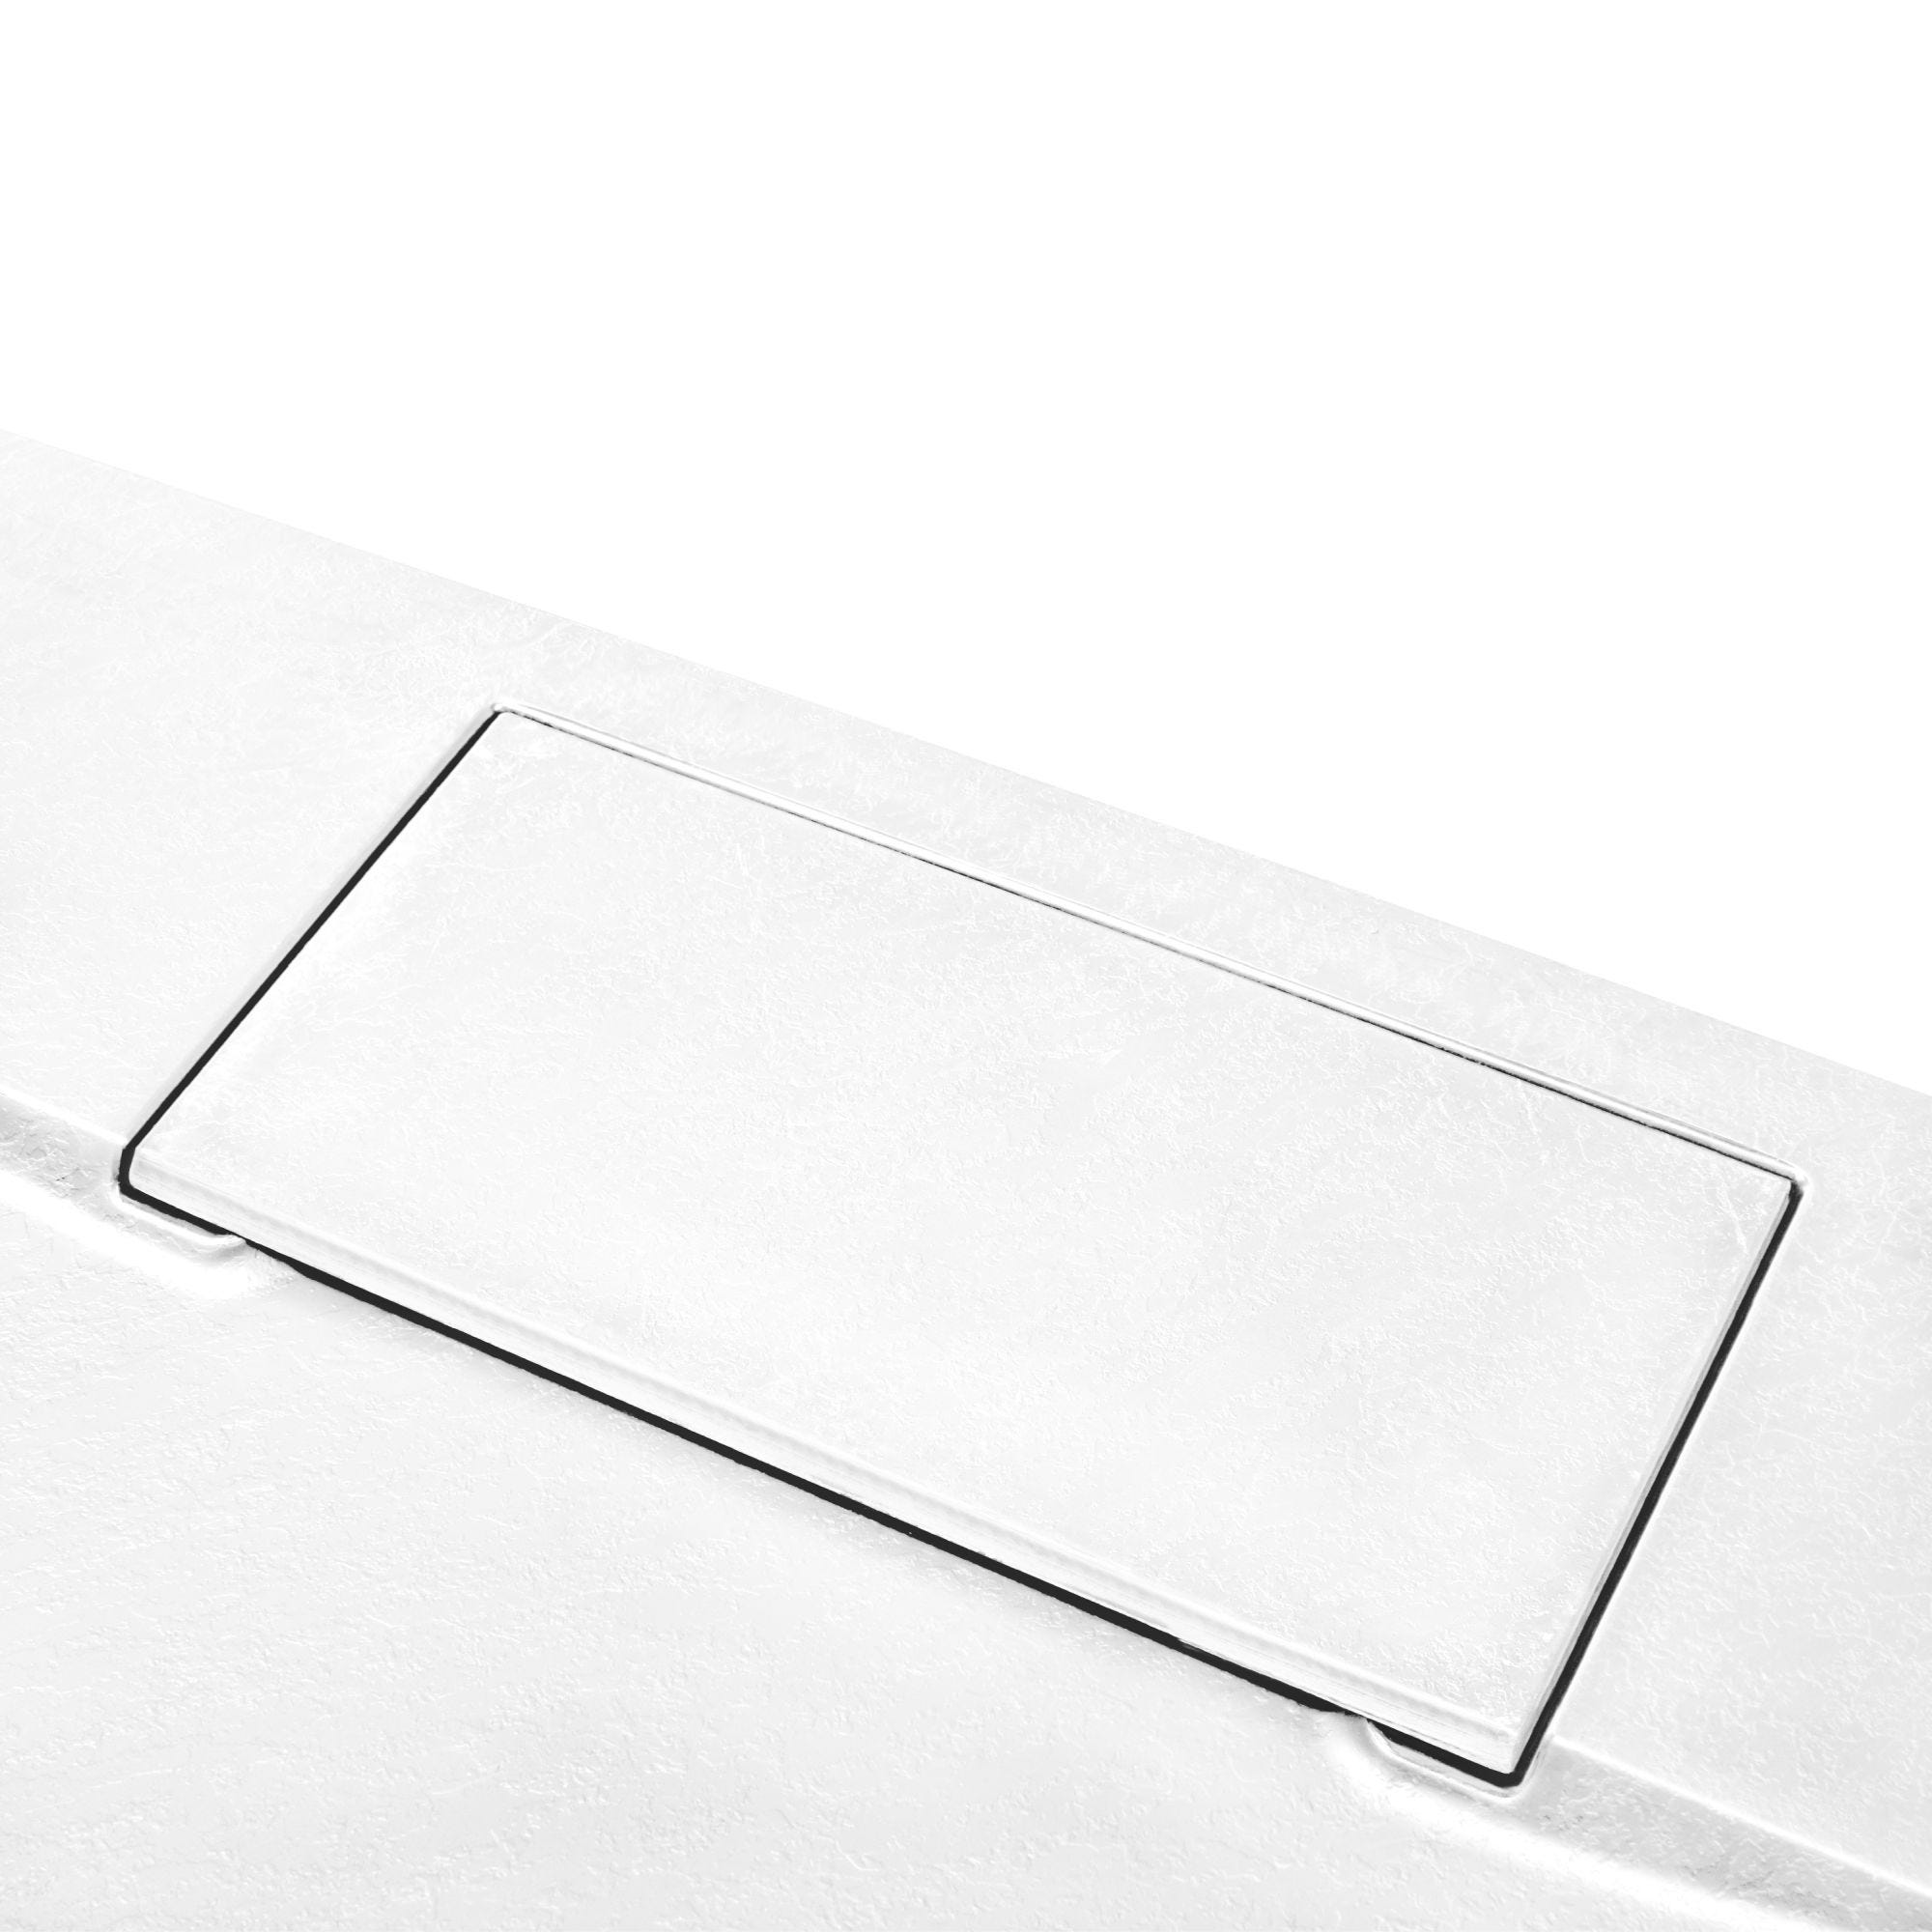 Schulte receveur de douche 80 x 160 x 3,2cm, blanc effet pierre ultra légers, rectangulaire, extra plat à poser ou à encastrer, bac à douche 4